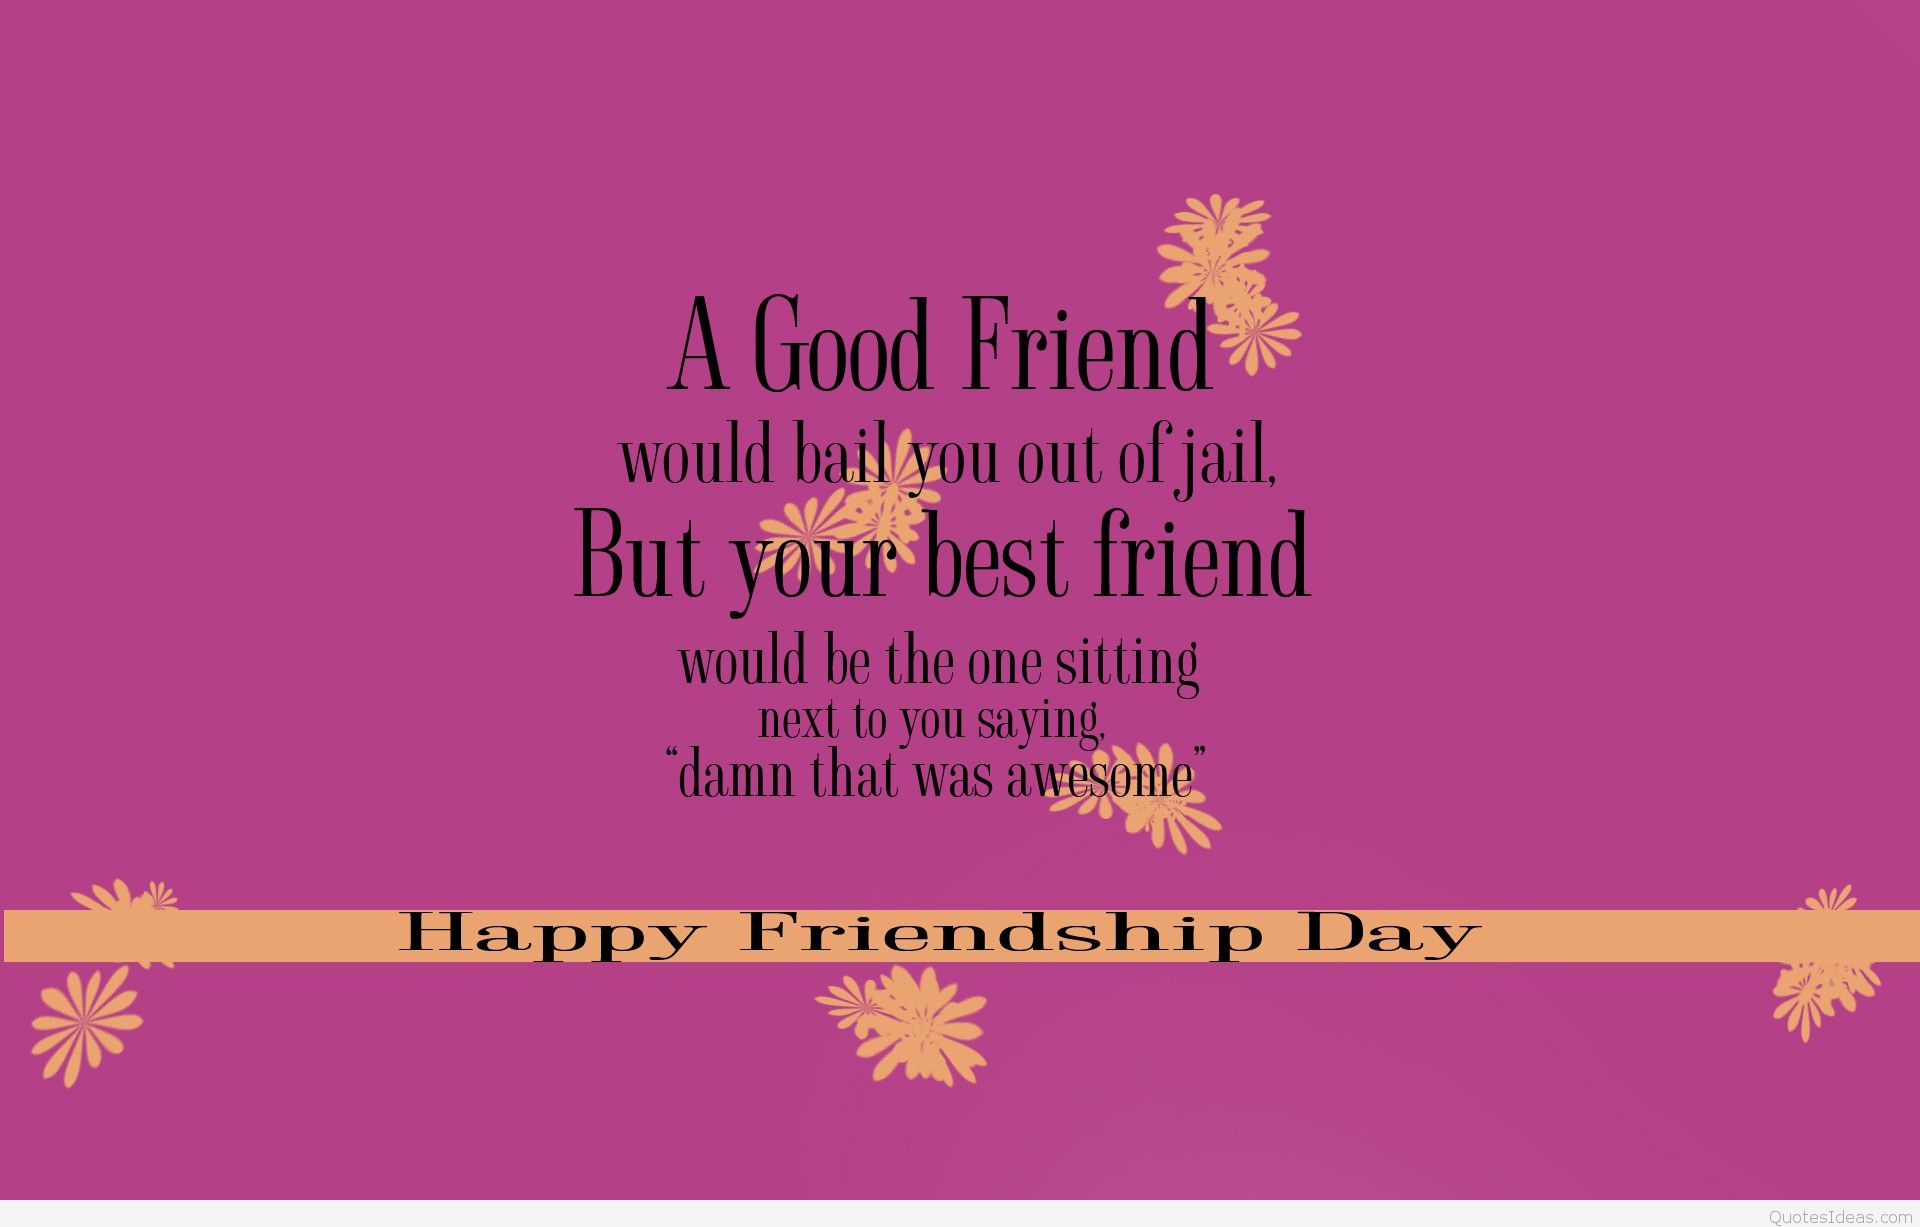 Happy Friendship Day Quotes 2014 Wallpaper 53cf6e158512e - Best Friend Friendship Day - HD Wallpaper 